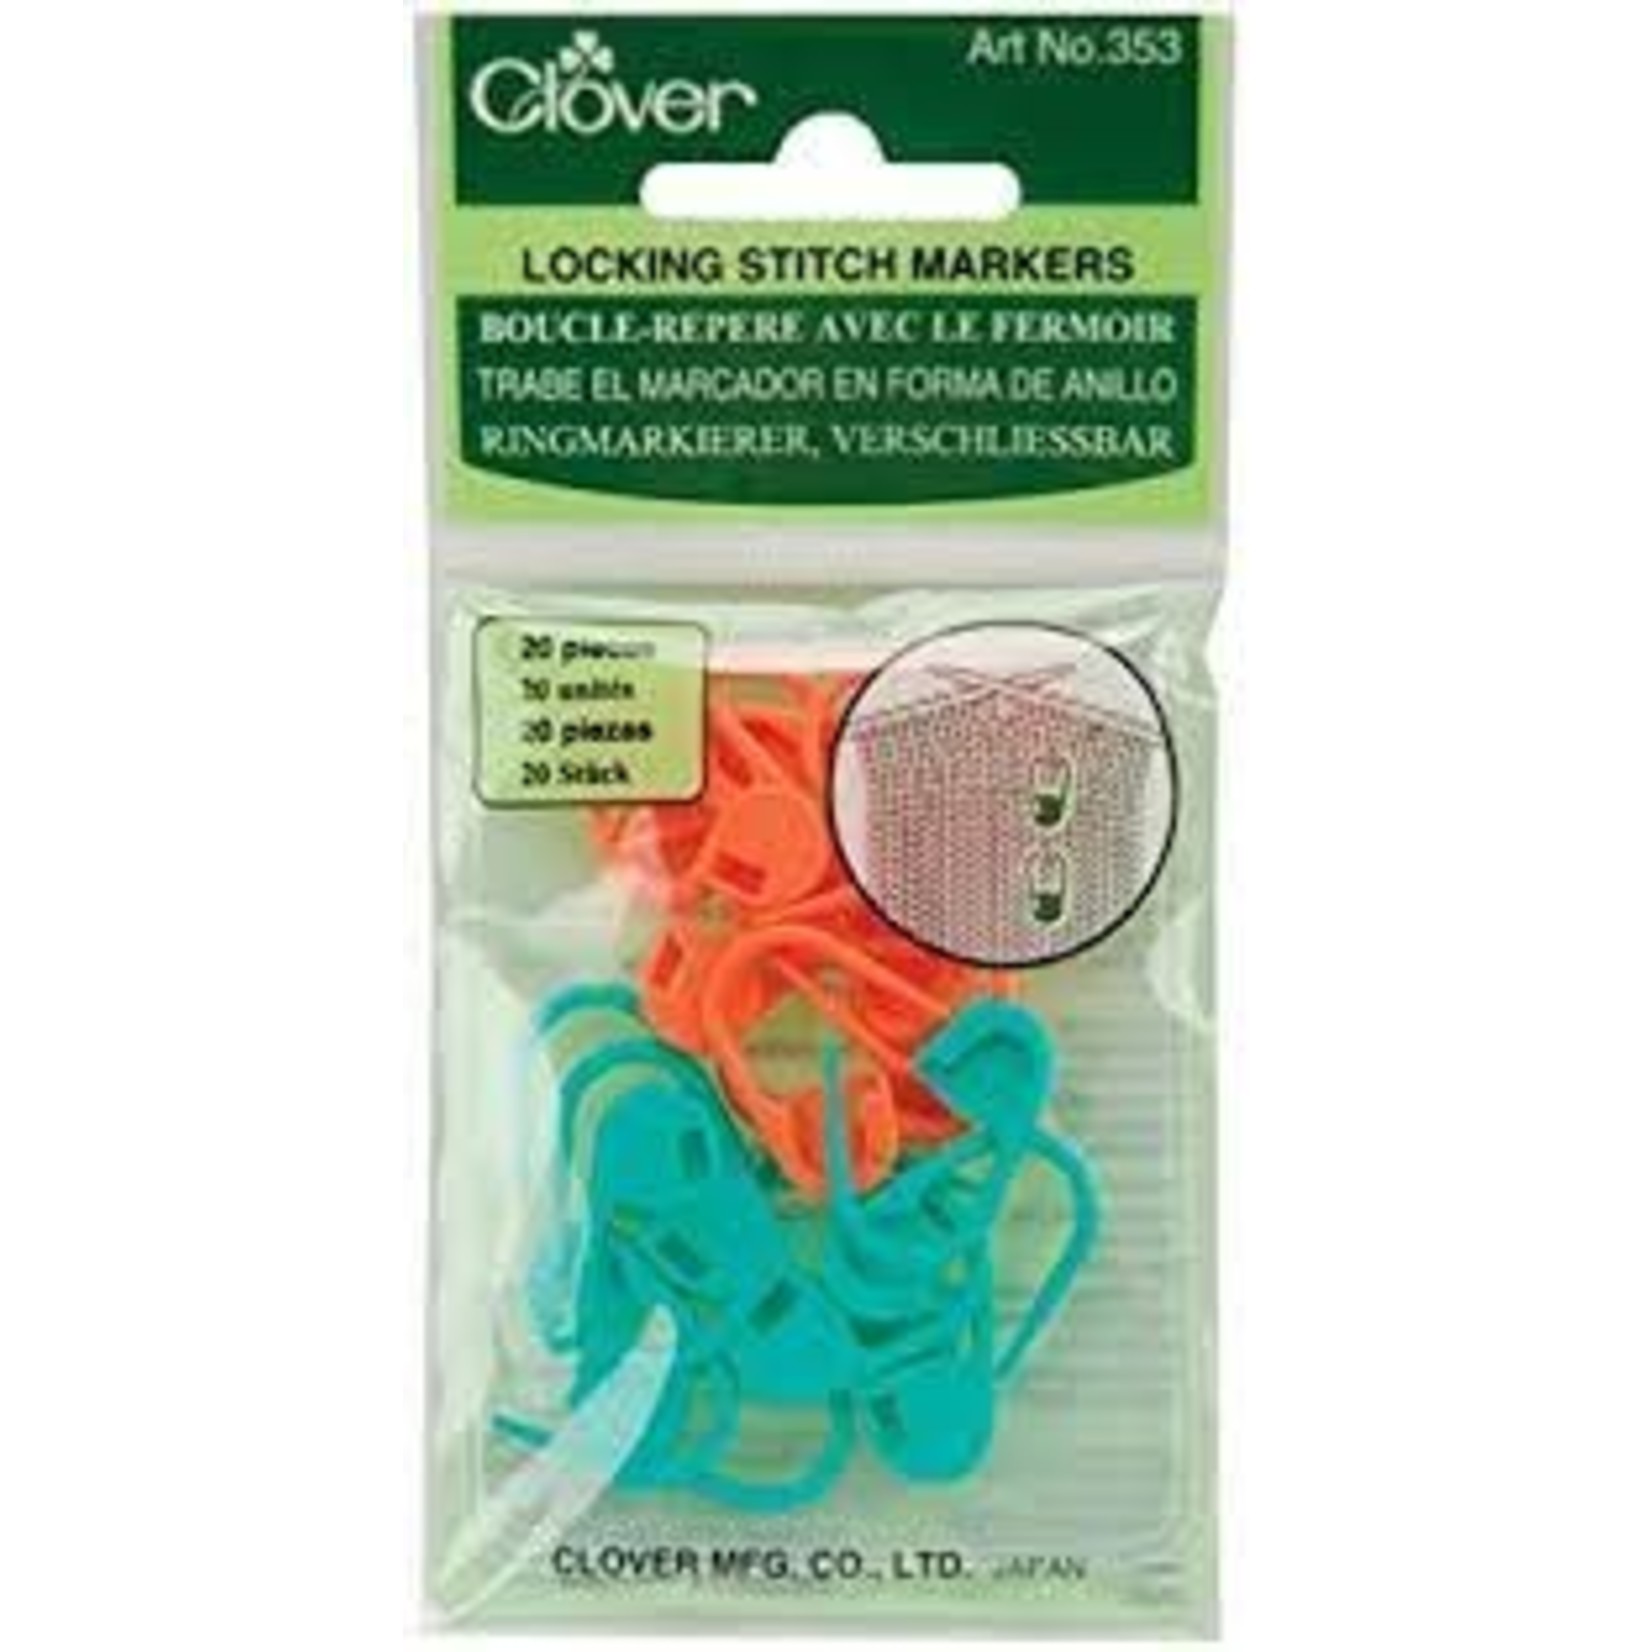 Clover Locking Stitch Markers (353)